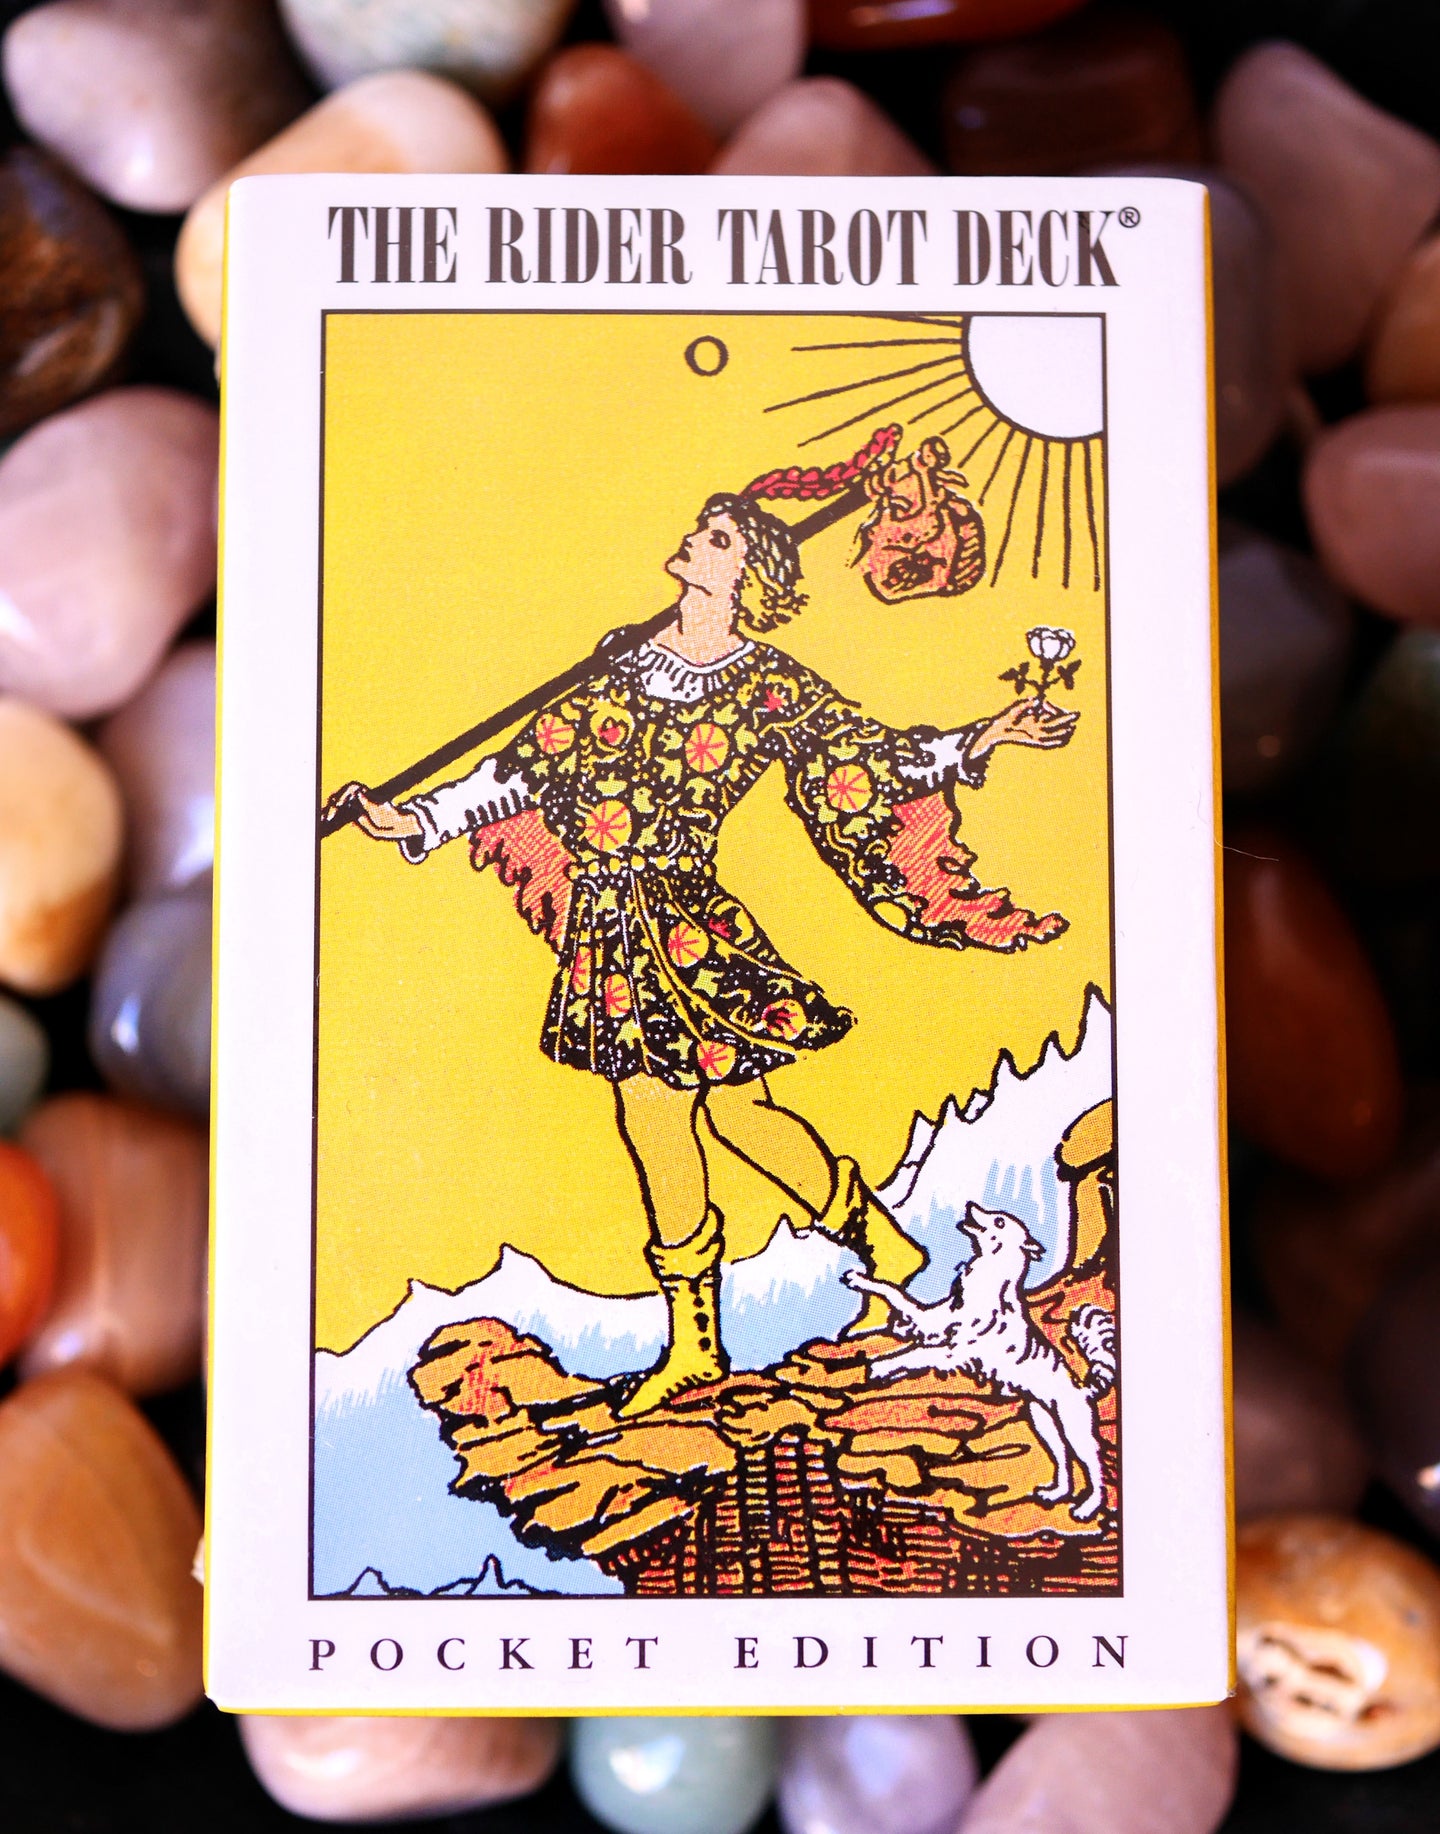 The Rider Tarot Deck- pocket edition